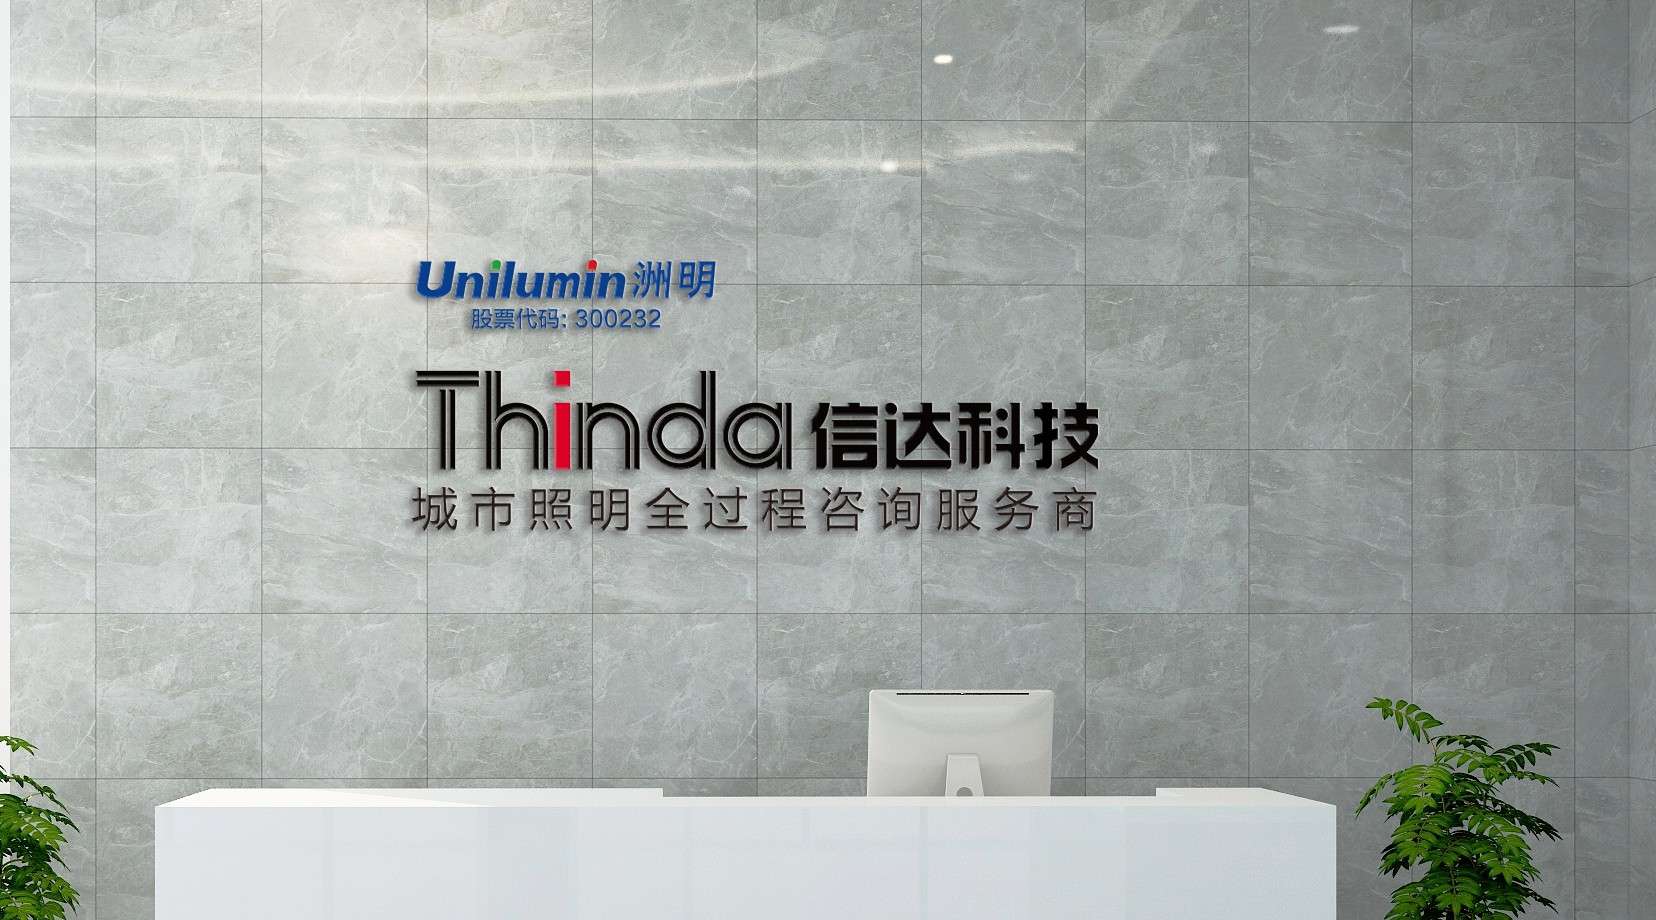 Thinda-信达科技2020企业宣传片（英文版）